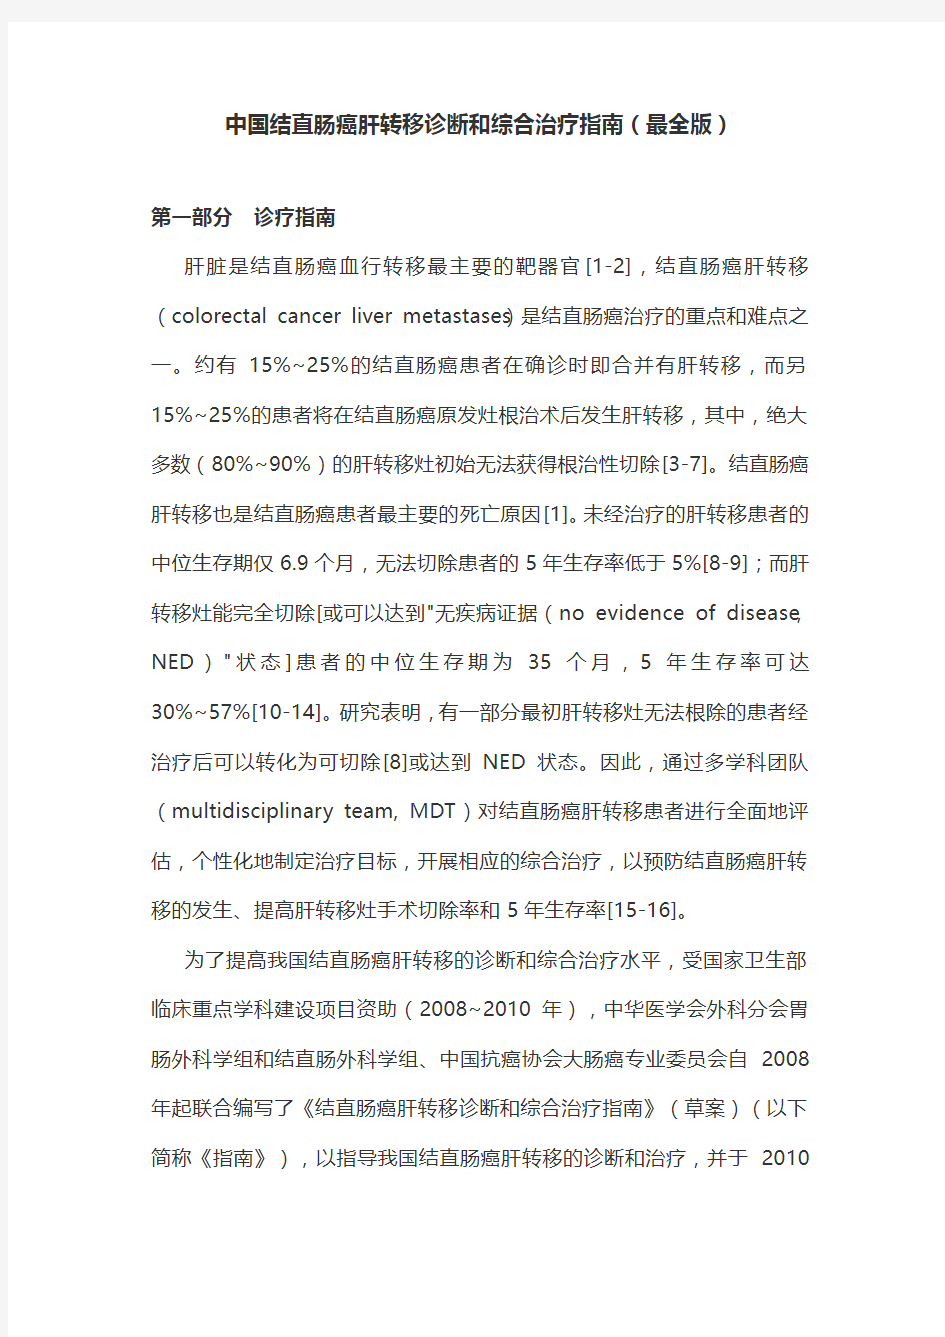 中国结直肠癌肝转移诊断和综合治疗指南(最全版)